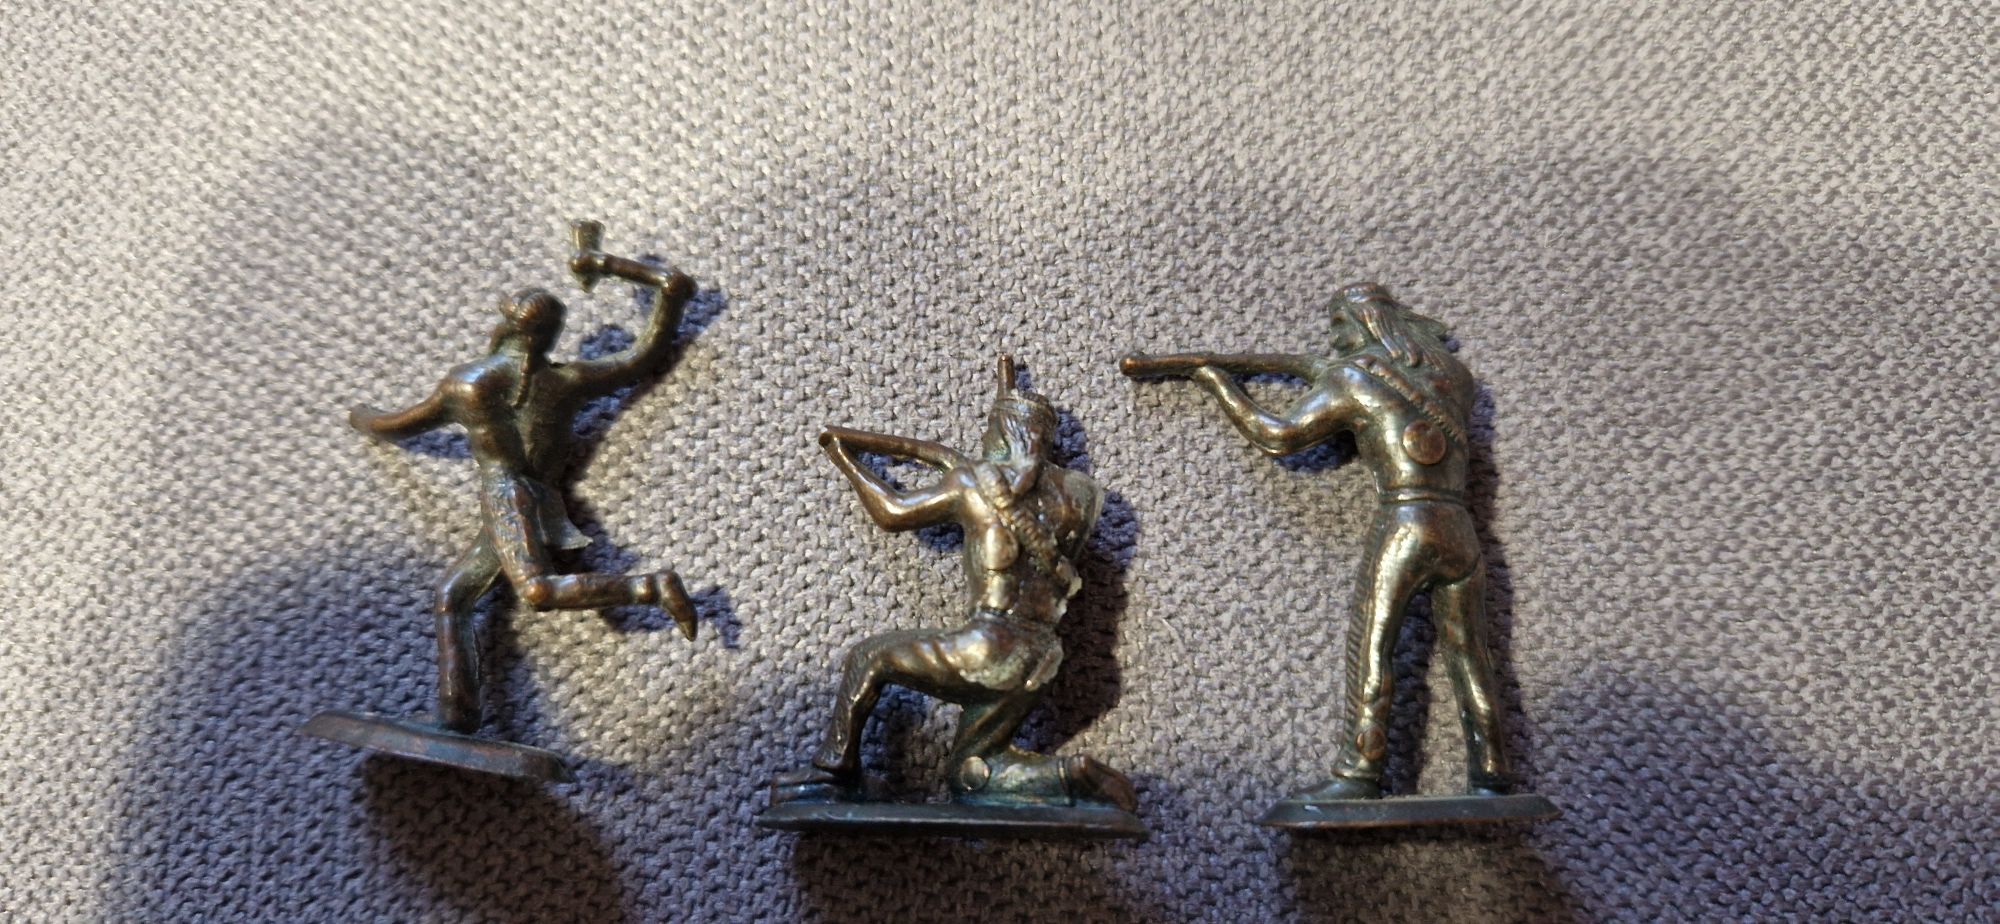 Indianie metalowe figurki z kinder niespodzianka